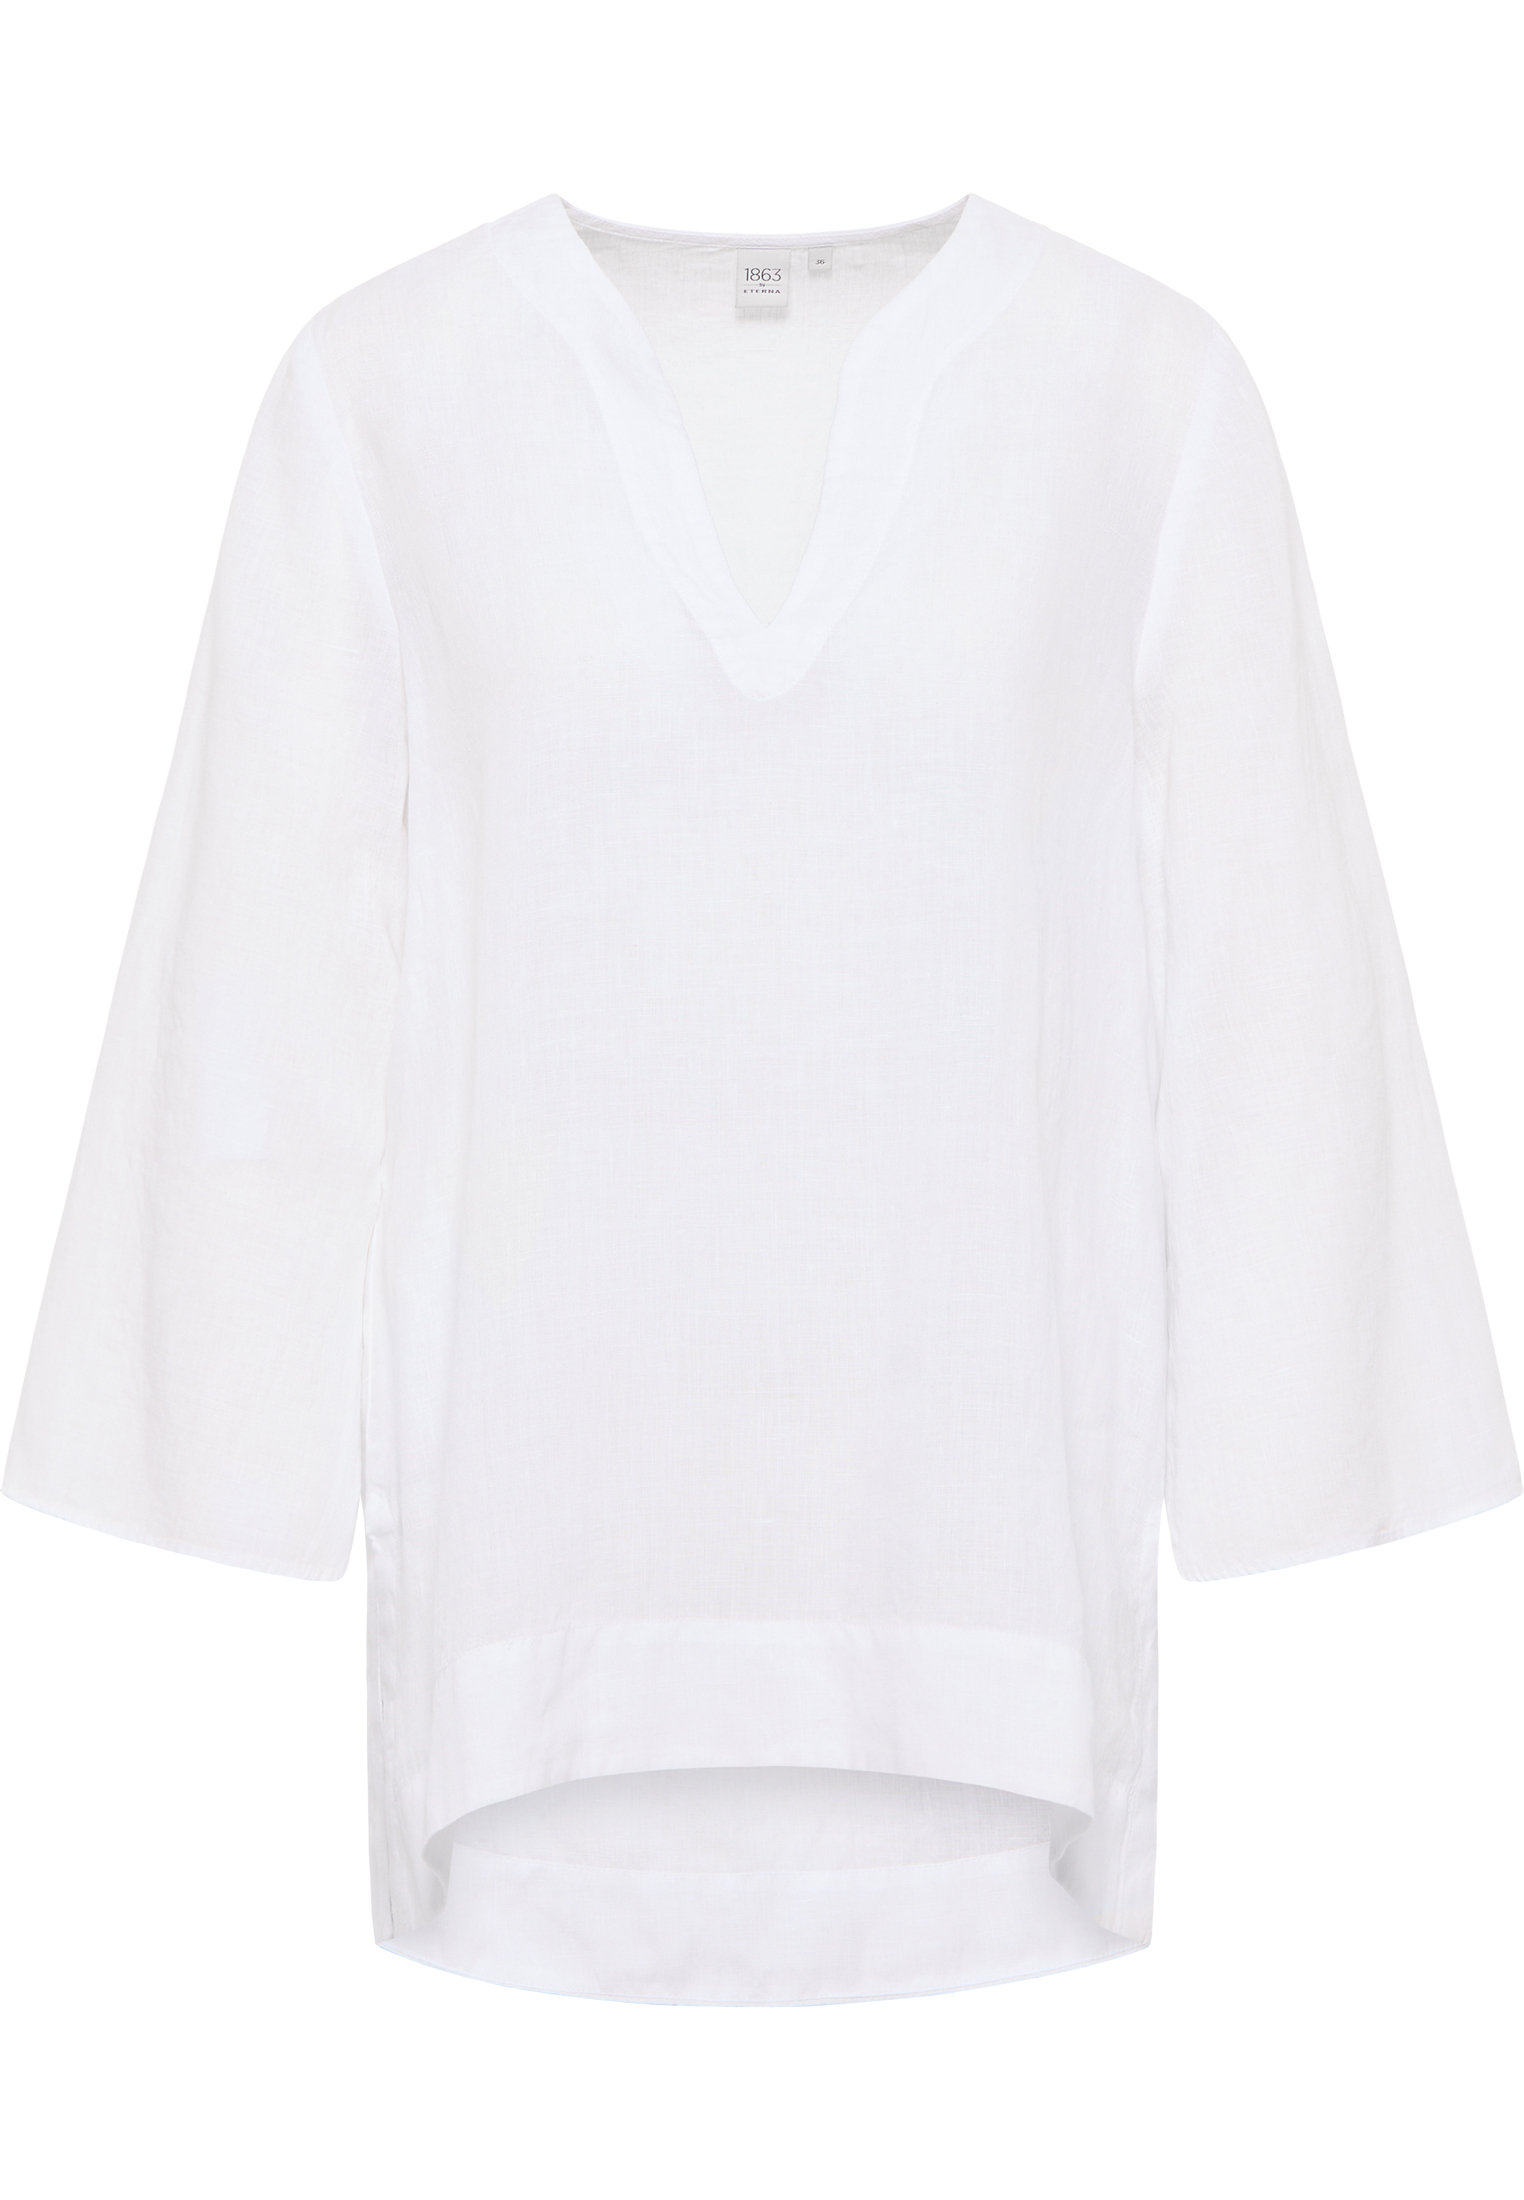 long tunic in white plain